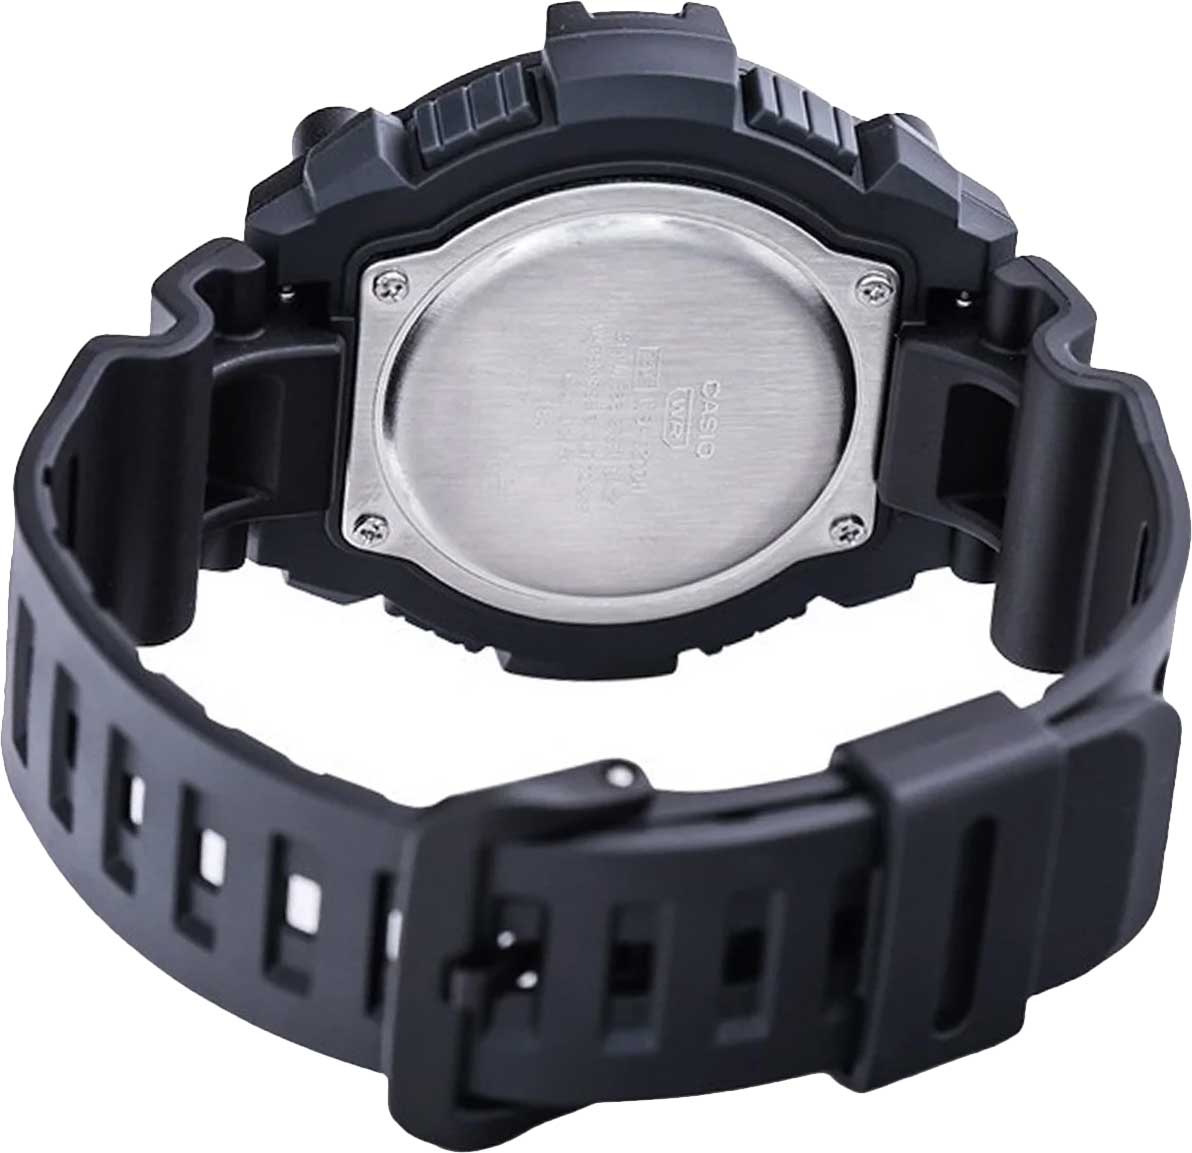 Наручные часы Casio Collection WS-1300H-1AVEF характеристики, AllTime.ru — фото, по купить описание лучшей интернет-магазине в цене